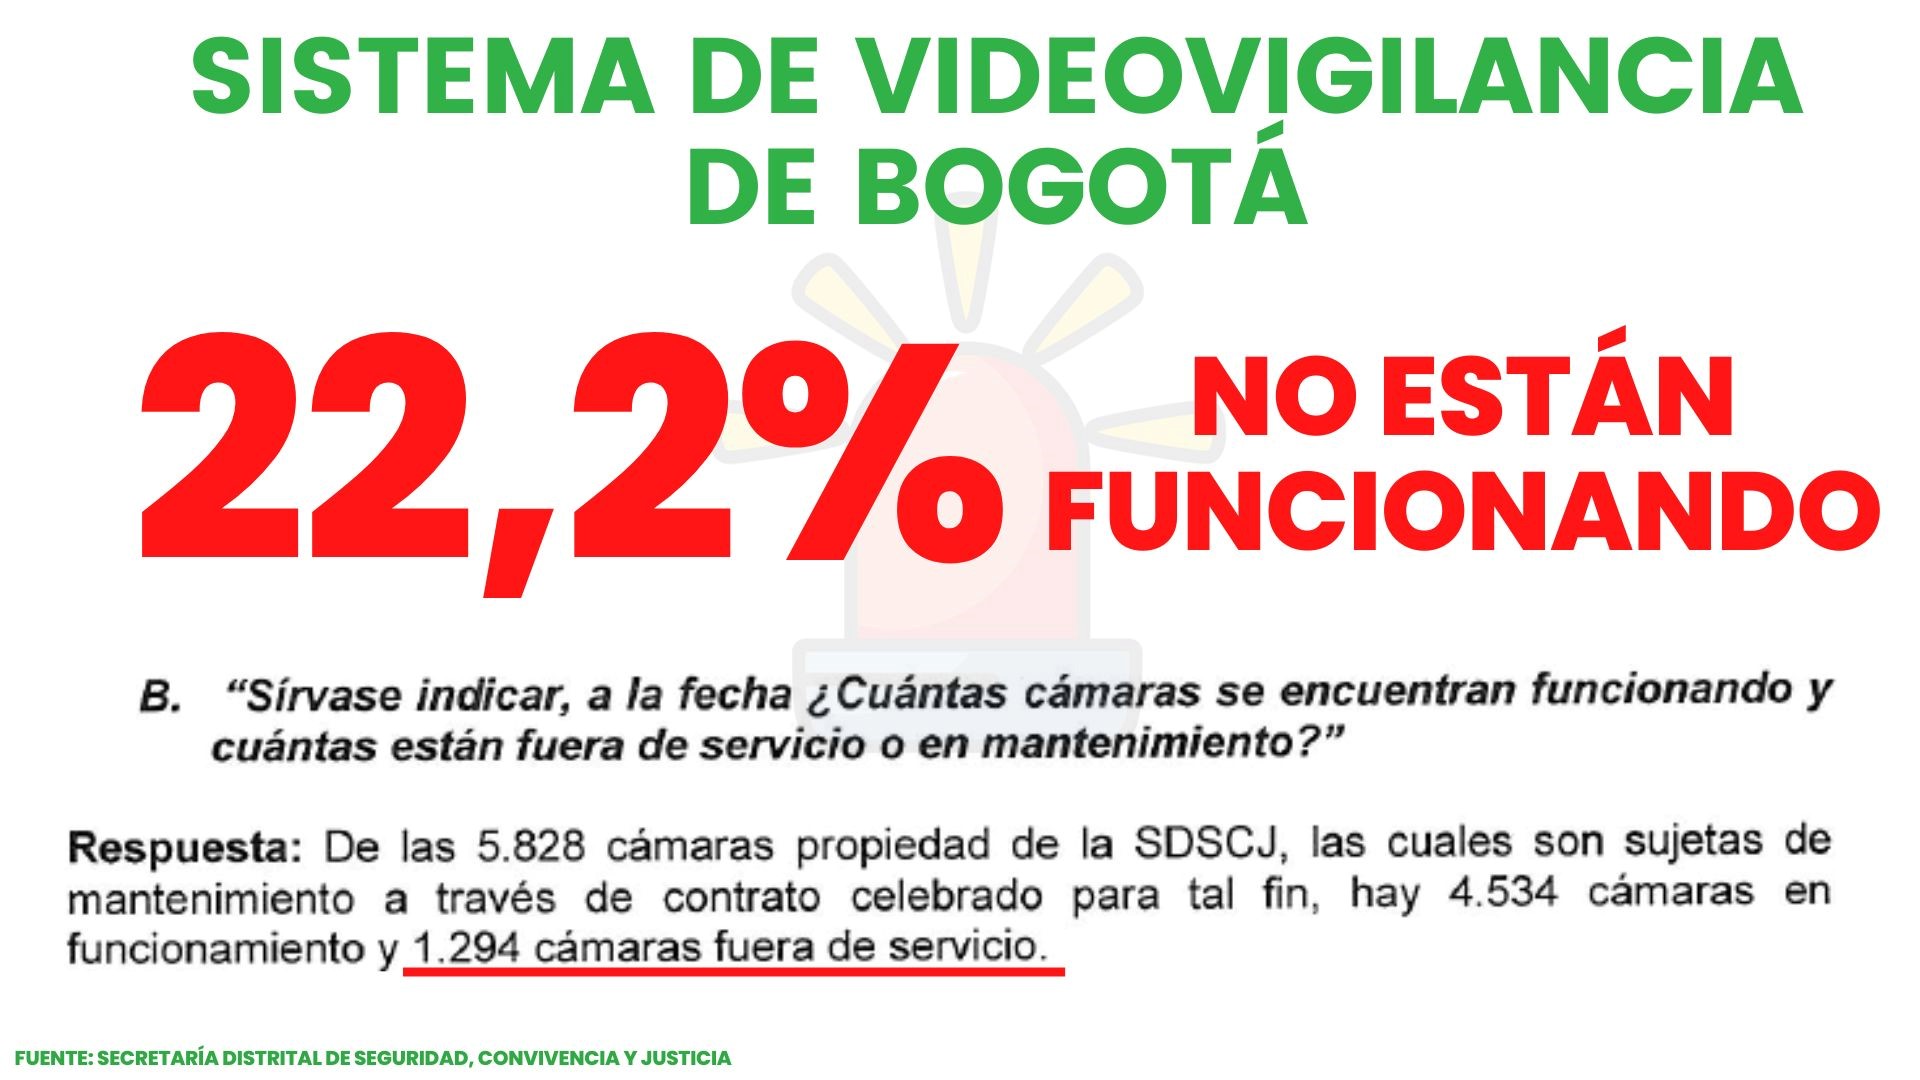 Imagen que tiene un texto principal que dice que el del sistema de videovigilancia de Bogotá el 22.2 % no está funcionando